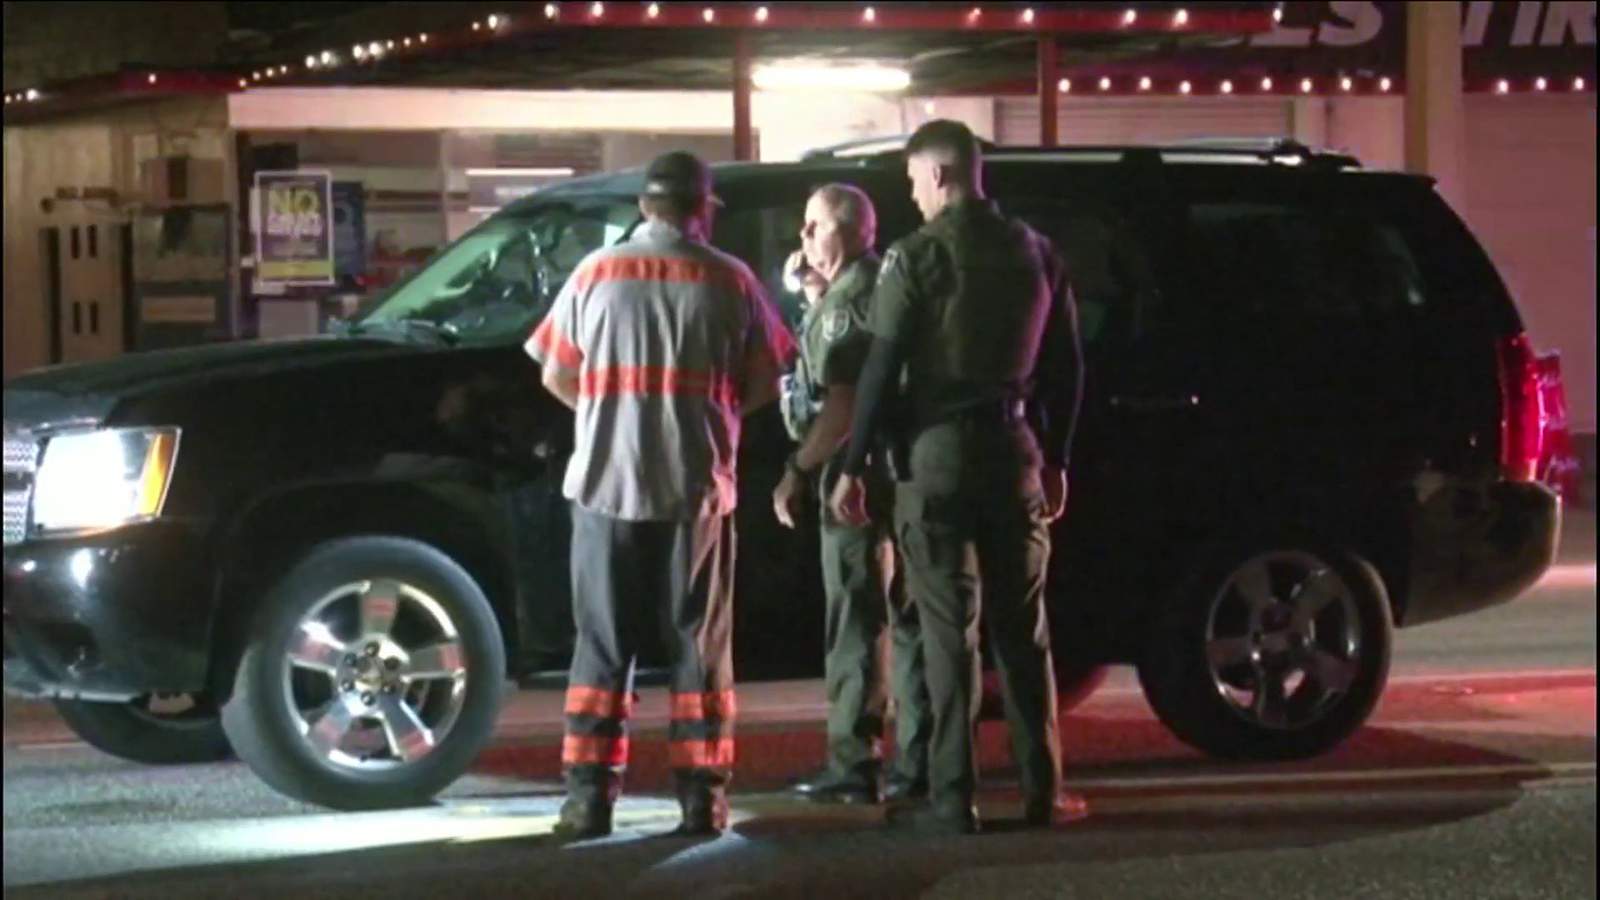 Man injured in accidental shooting in Putnam County, deputies say